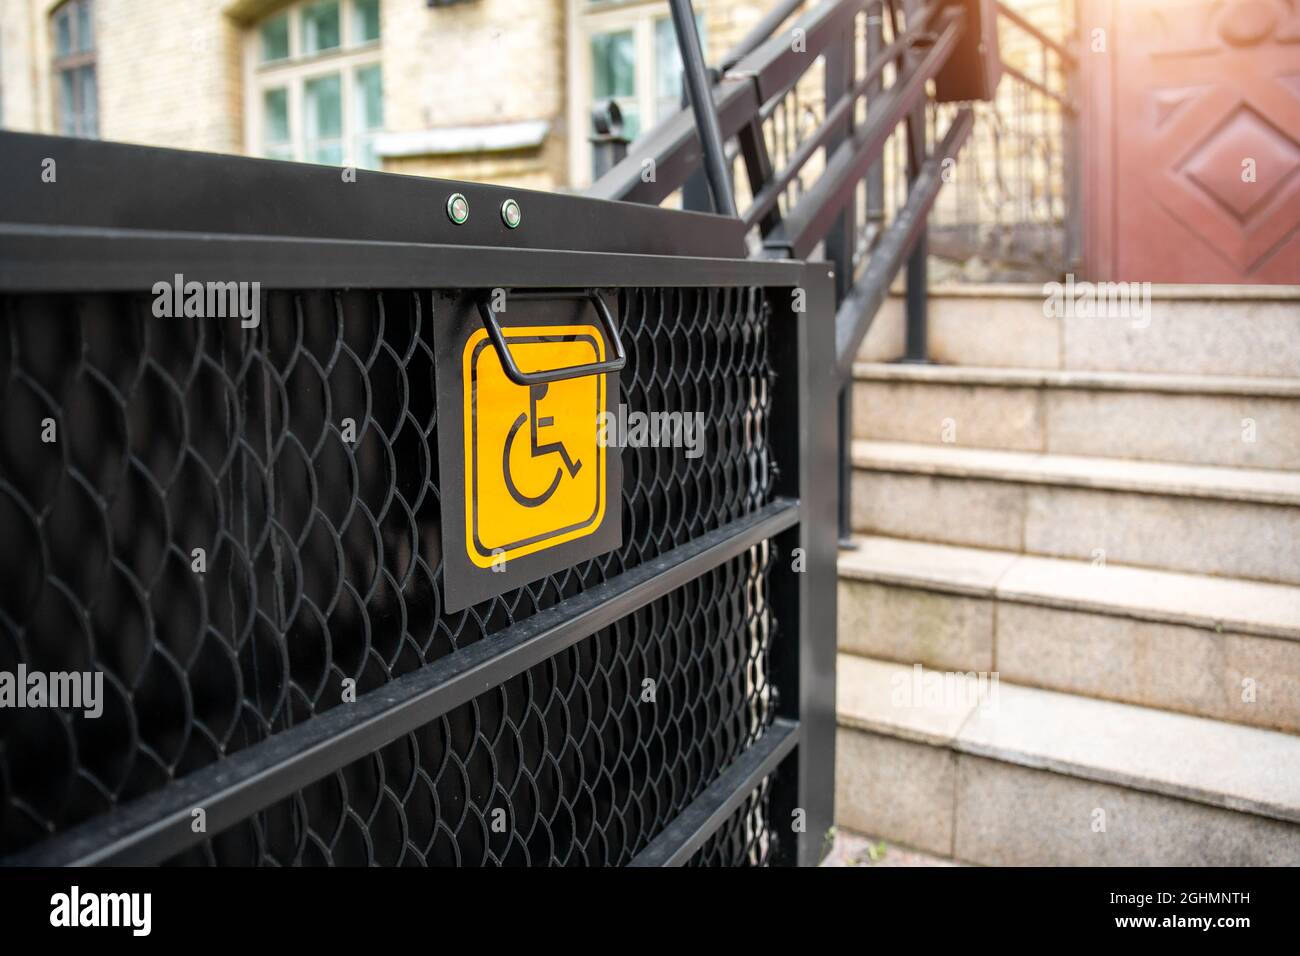 Elektrischer Plattformlift an der Gebäudetreppe für behinderte Menschen mit Rollstuhlschild an der alten Stadtstraße. Aufzug Treppenlift Rampe Mechanismus für Stockfoto